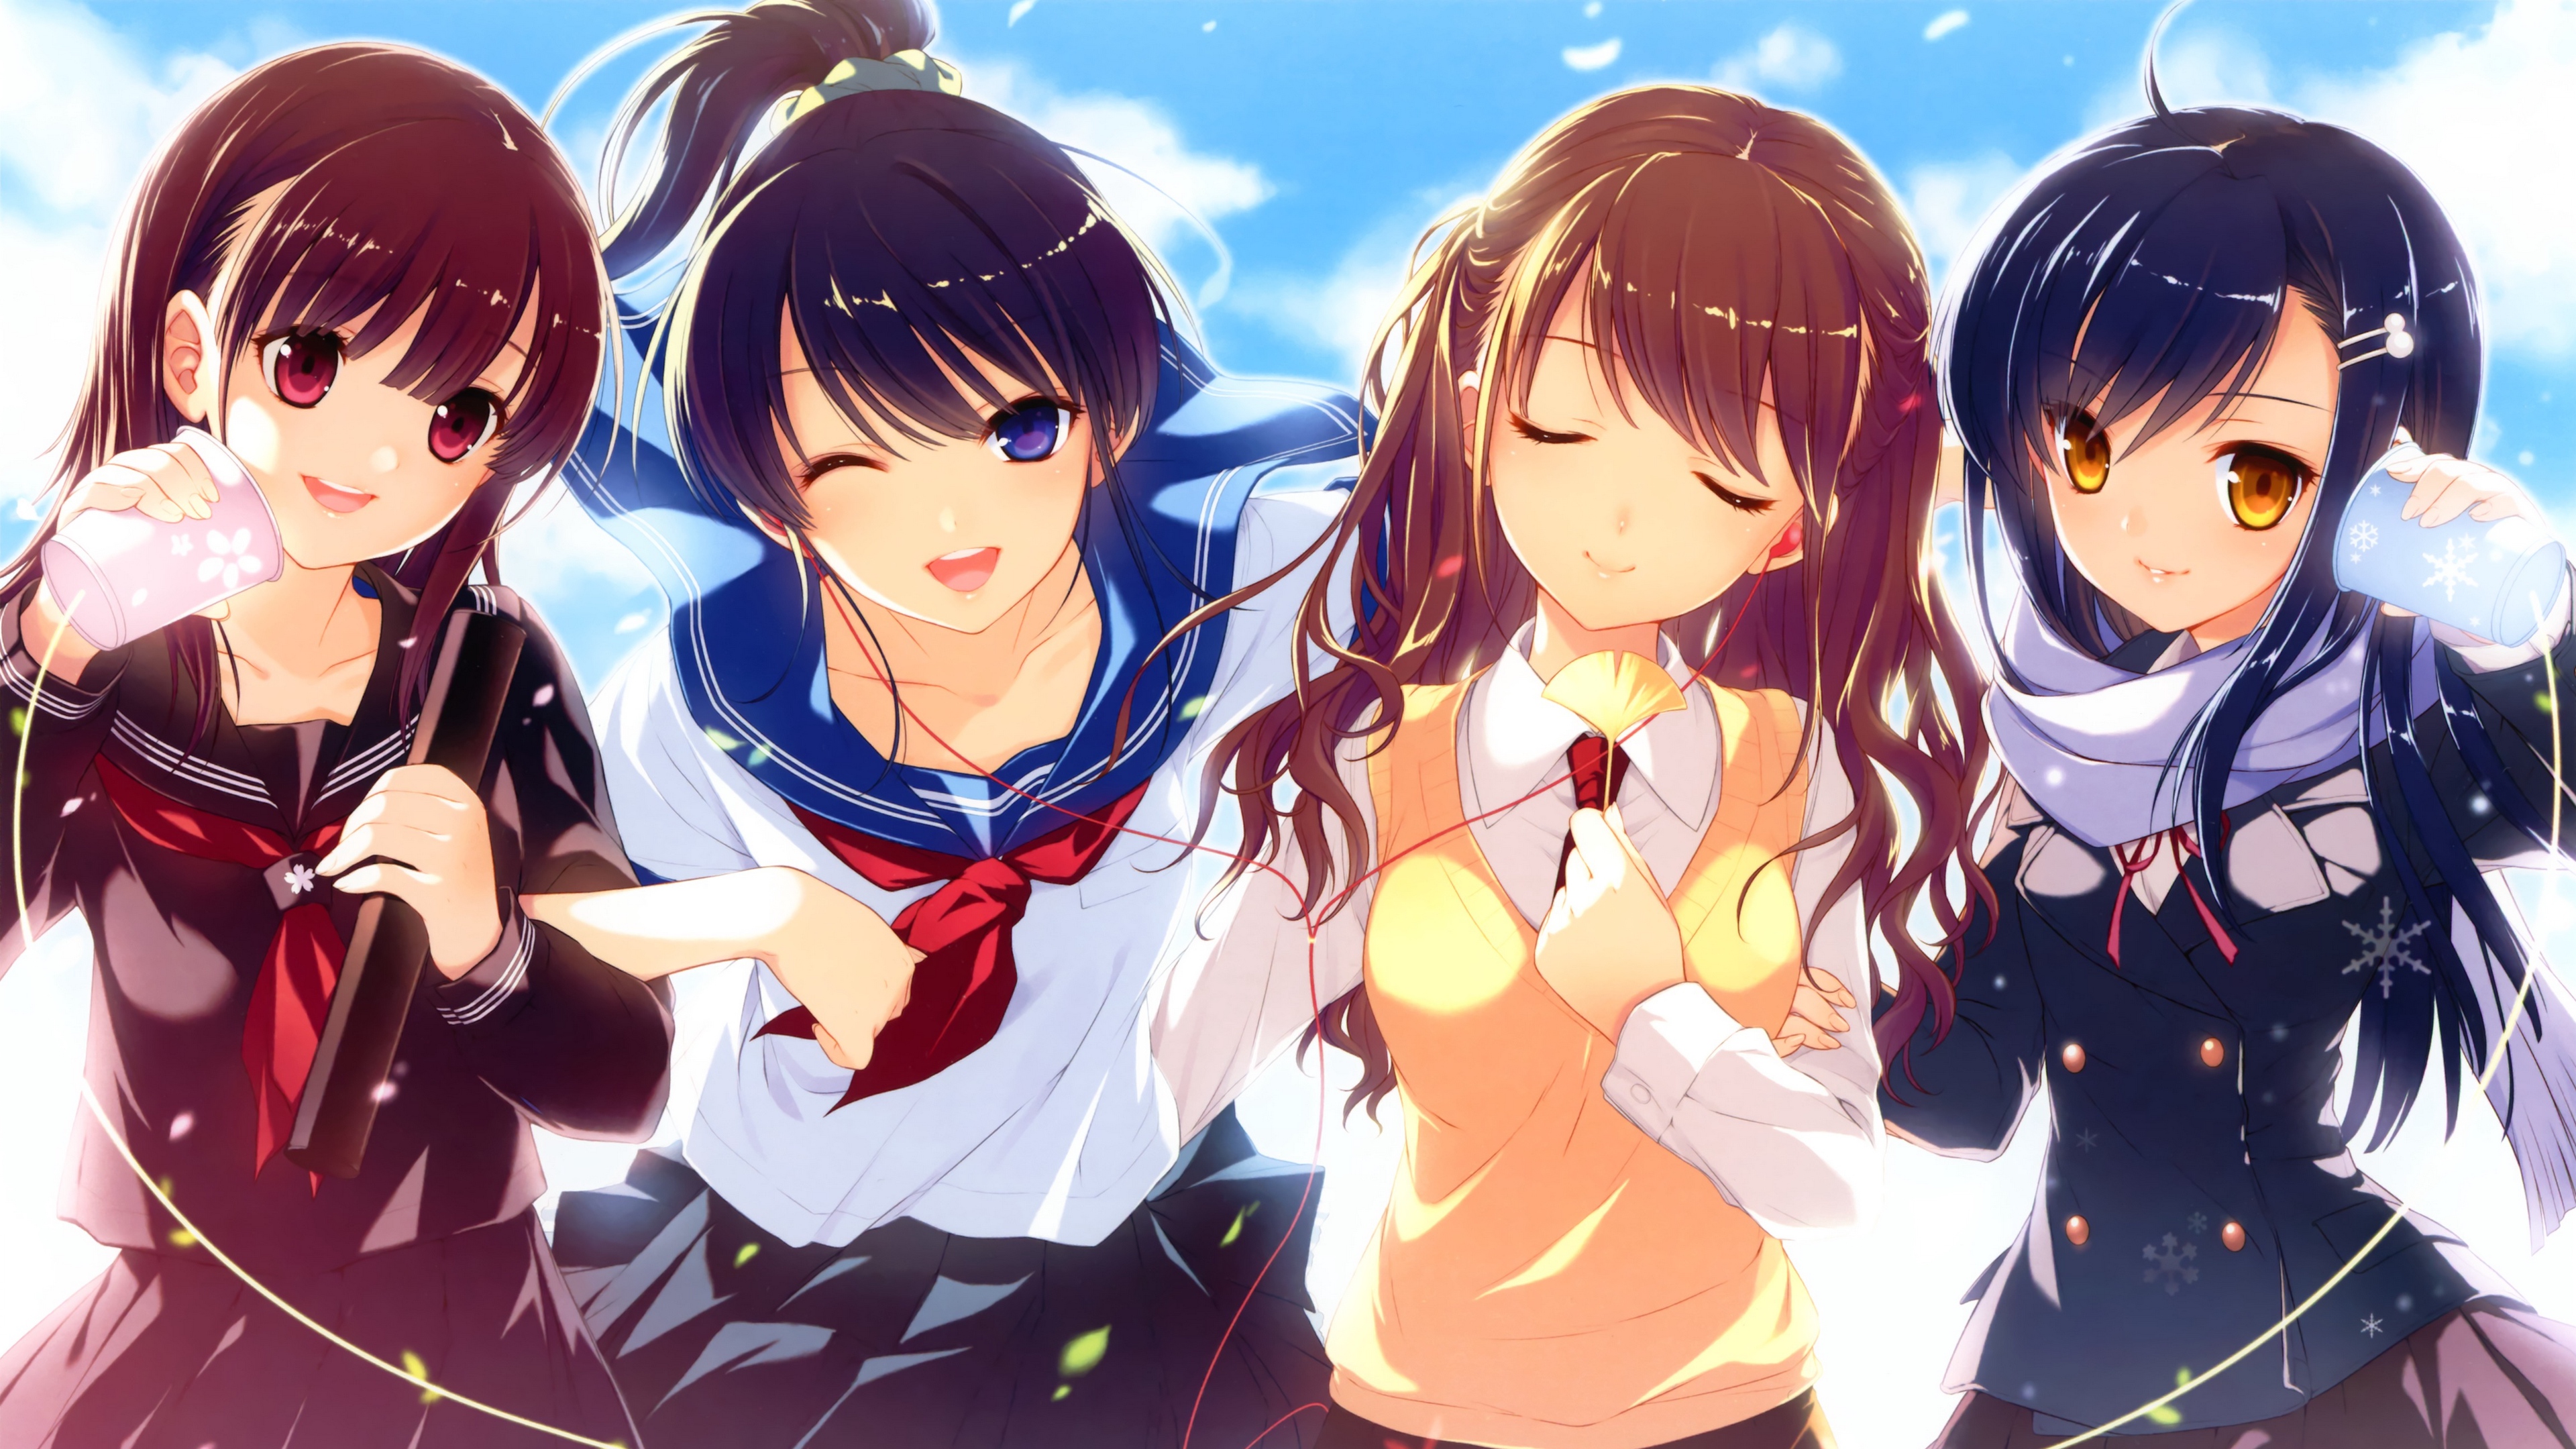 high school girls girls anime schoolgirl 4k 1541976060 - high school girls, girls, anime, schoolgirl 4k - high school girls, Girls, Anime